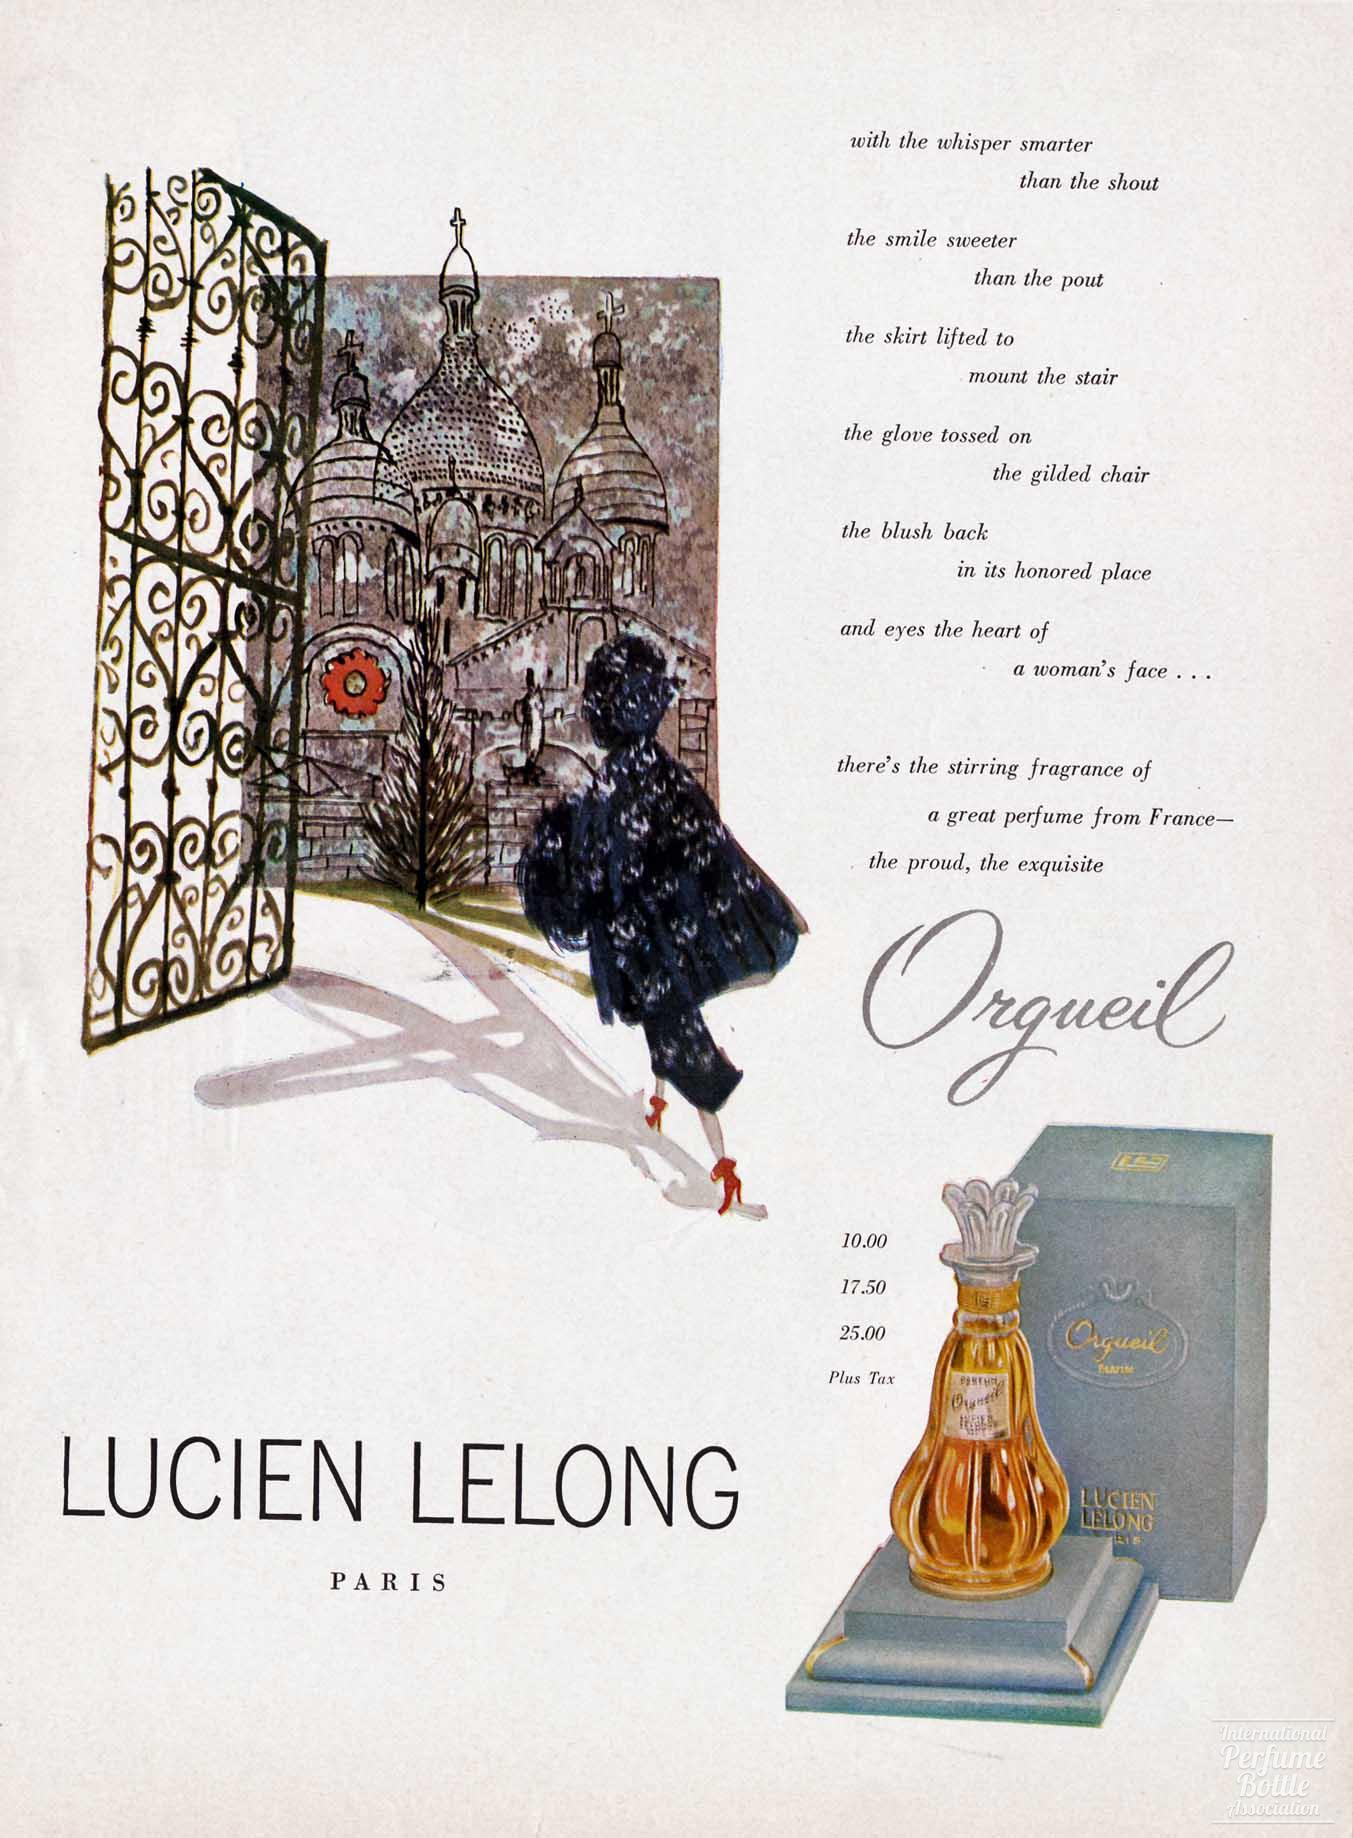 "Orgueil" by Lucien Lelong Advertisement - 1953